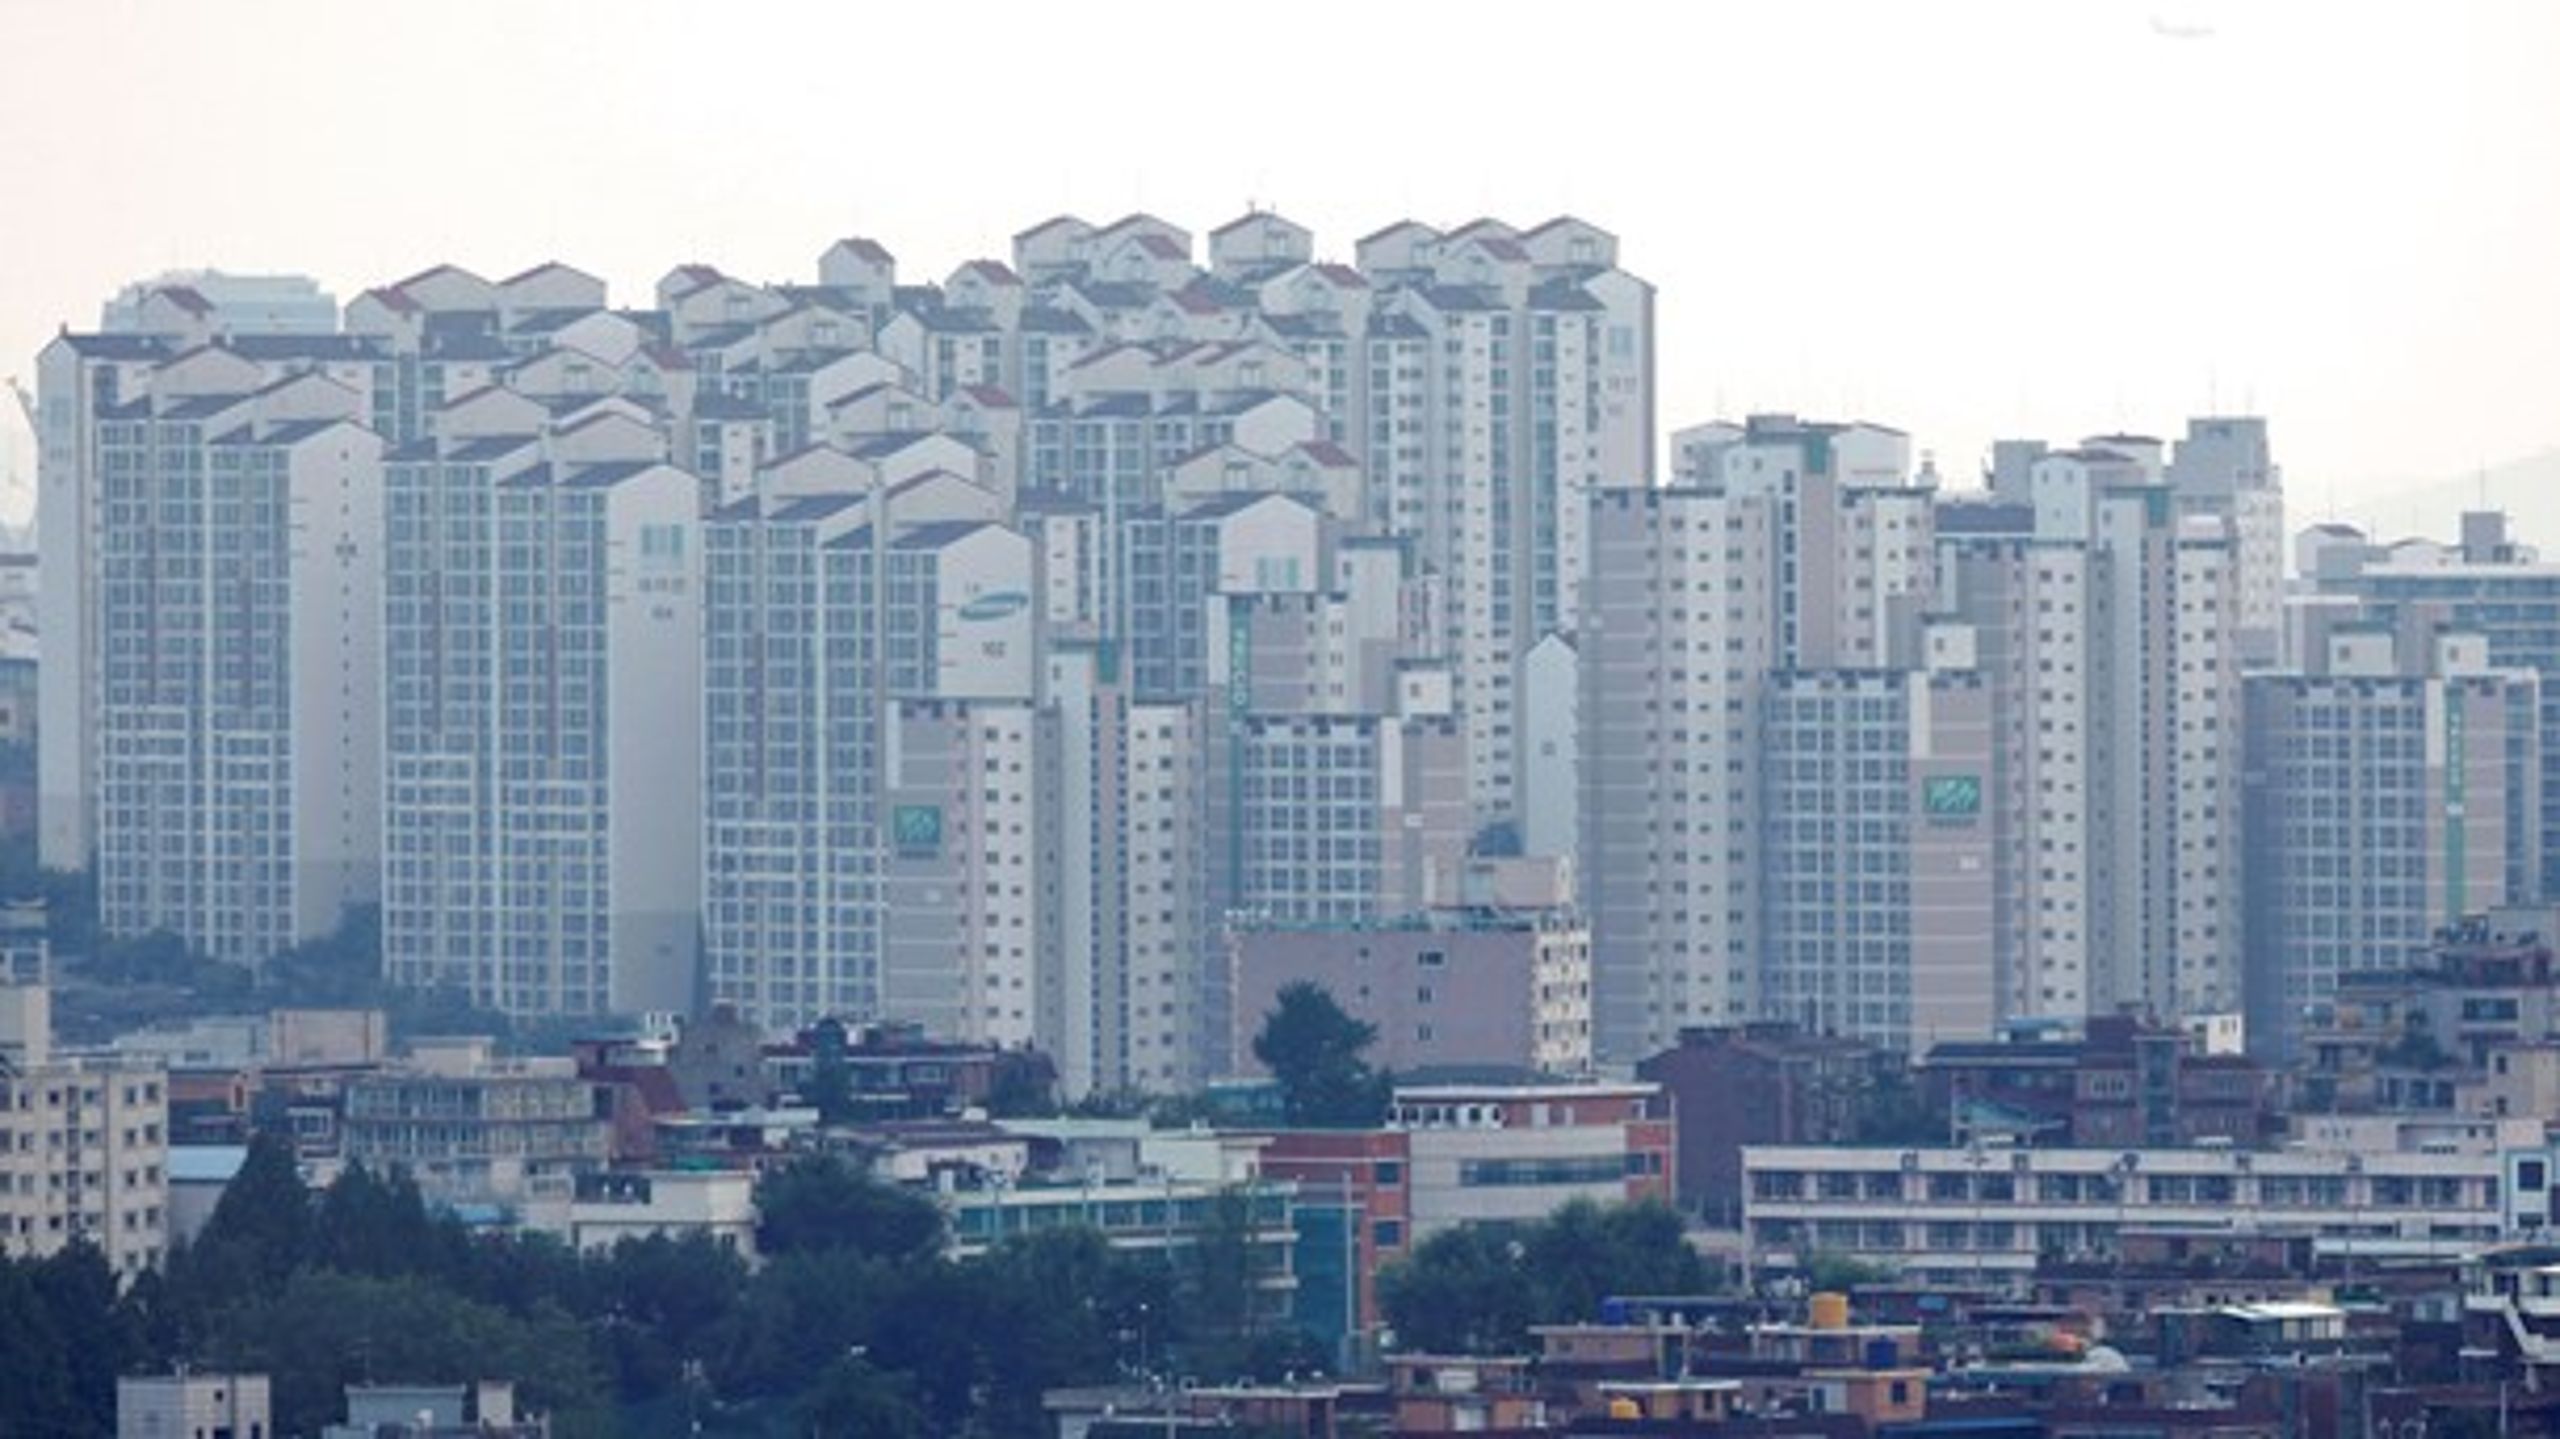 Seoul har 10 millioner indbyggere og vokser stadig hastigt